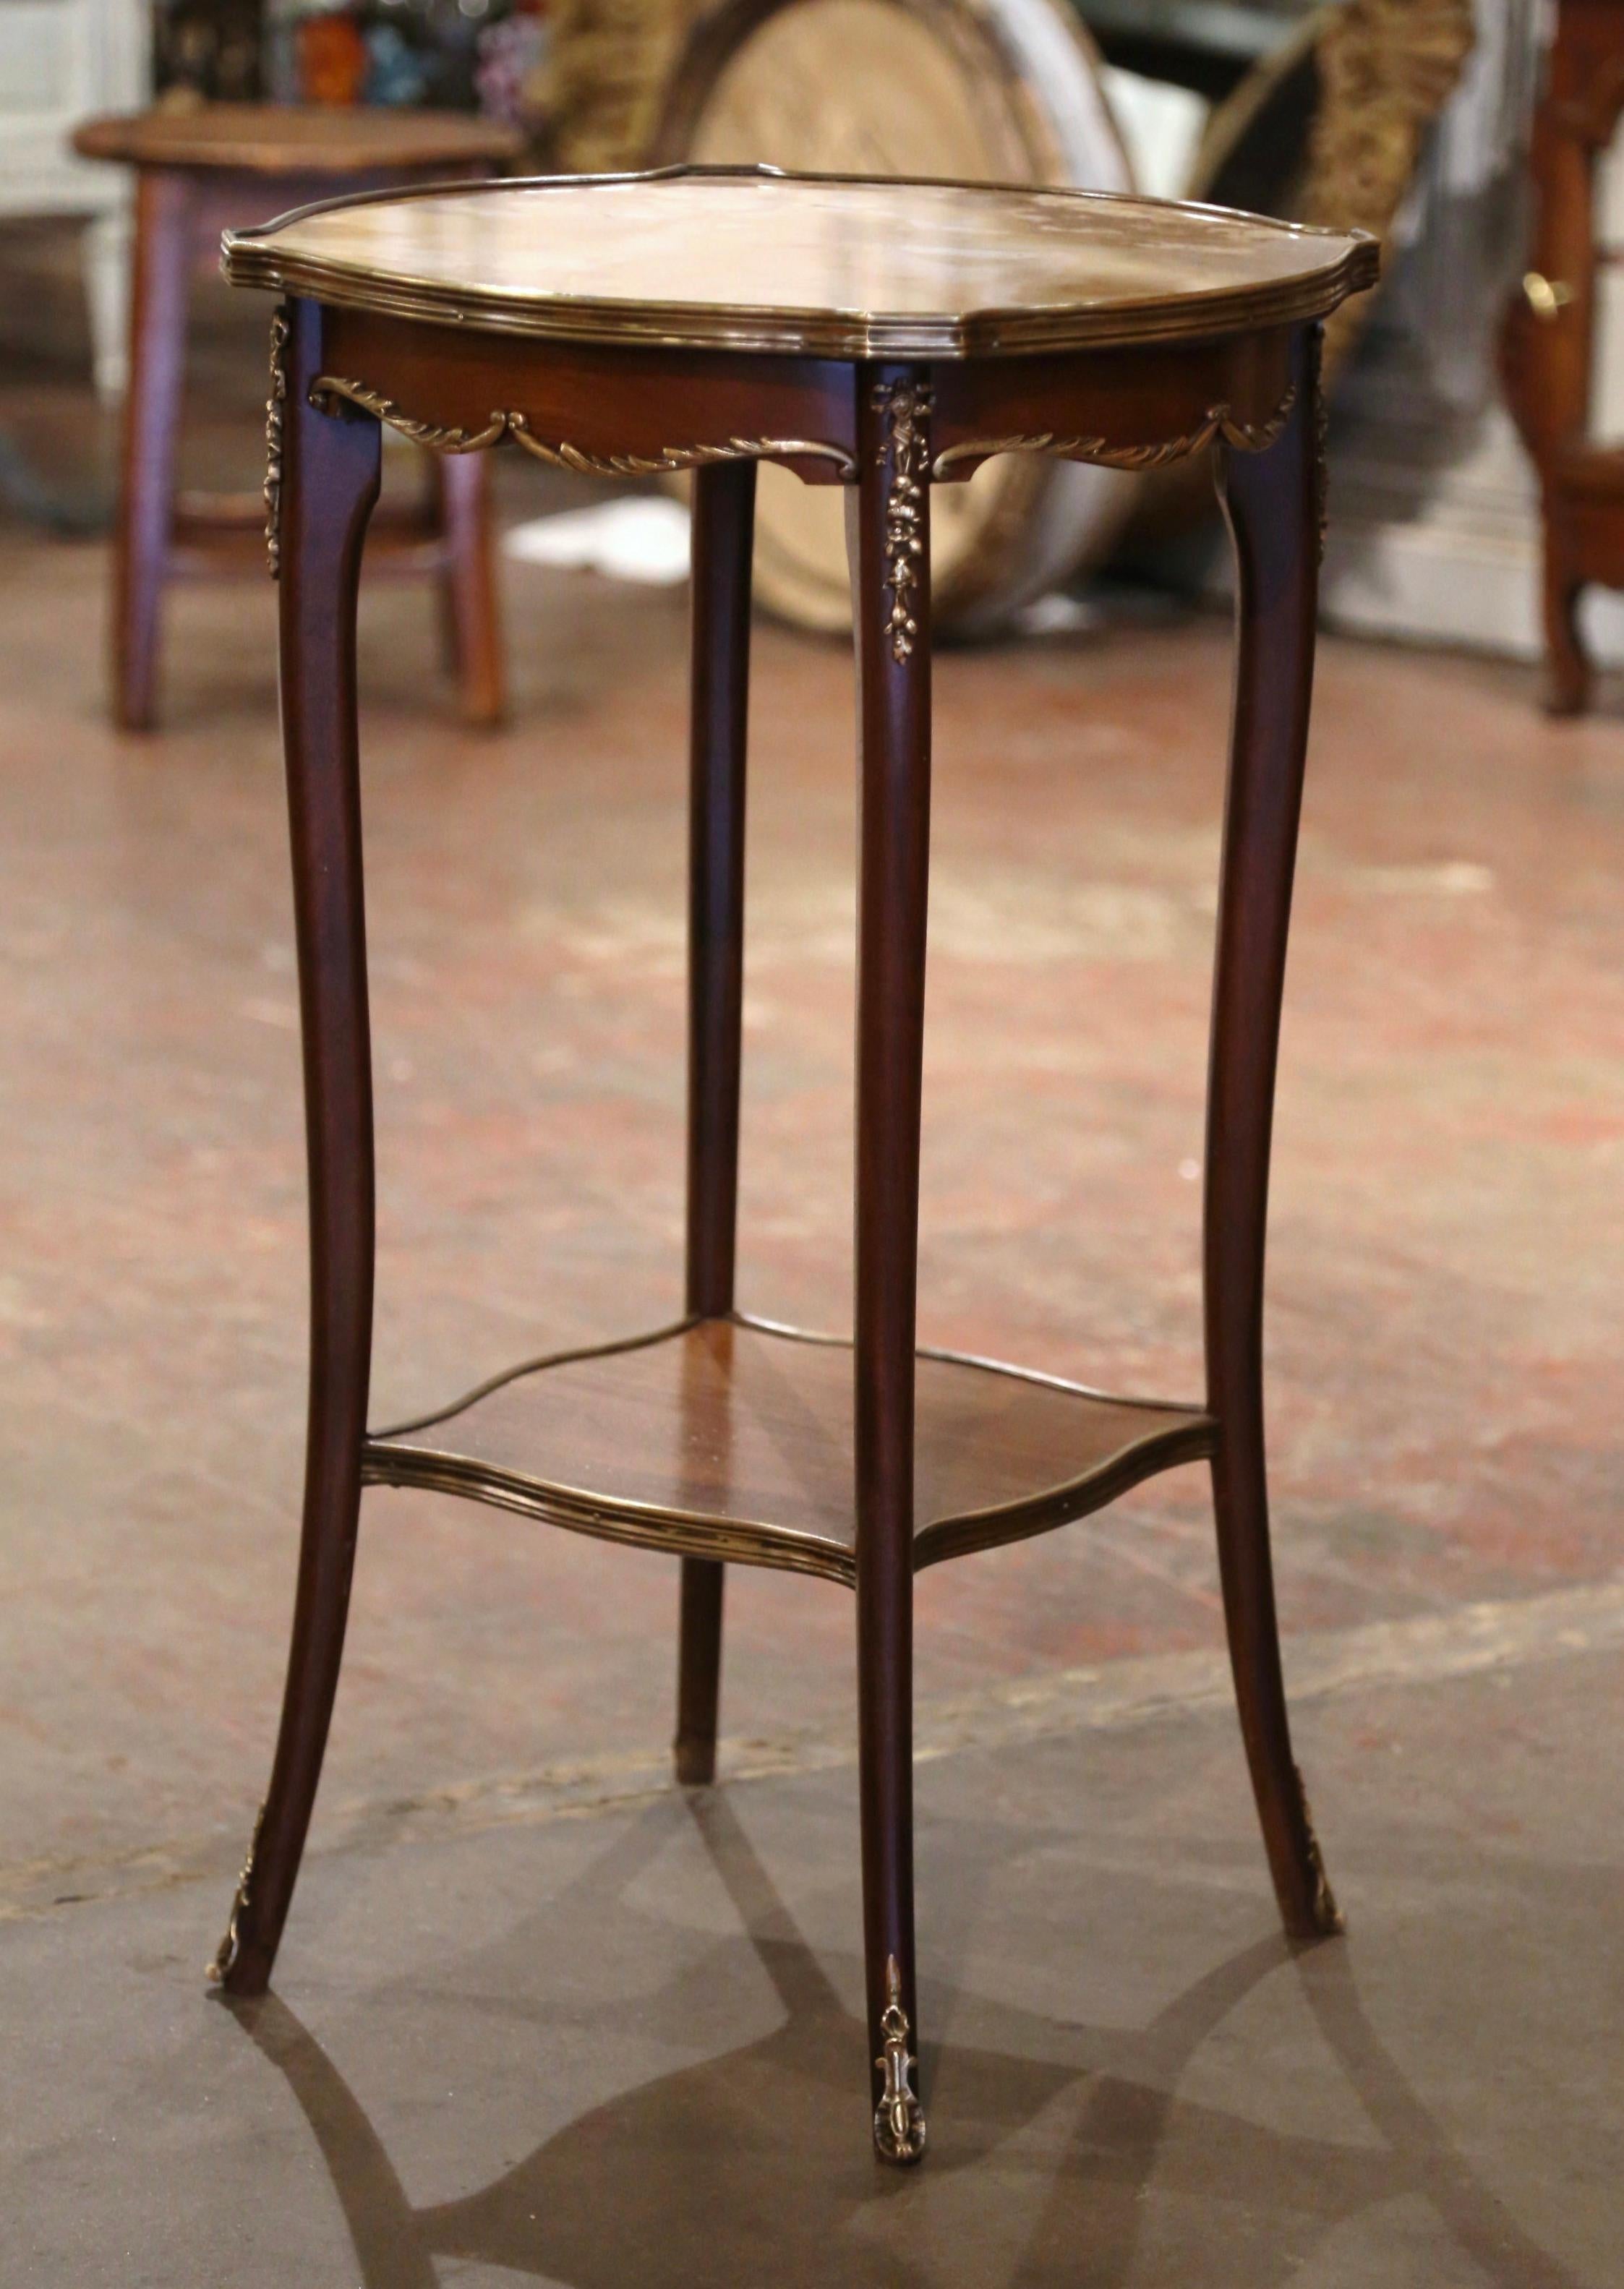  Dekorieren Sie ein DEN mit diesem eleganten antiken Beistelltisch. Der um 1950 in Frankreich gefertigte Tisch hat eine runde Form mit vertieften Ecken und steht auf Cabriole-Beinen, die an den Schultern mit dekorativen Bronzebeschlägen versehen